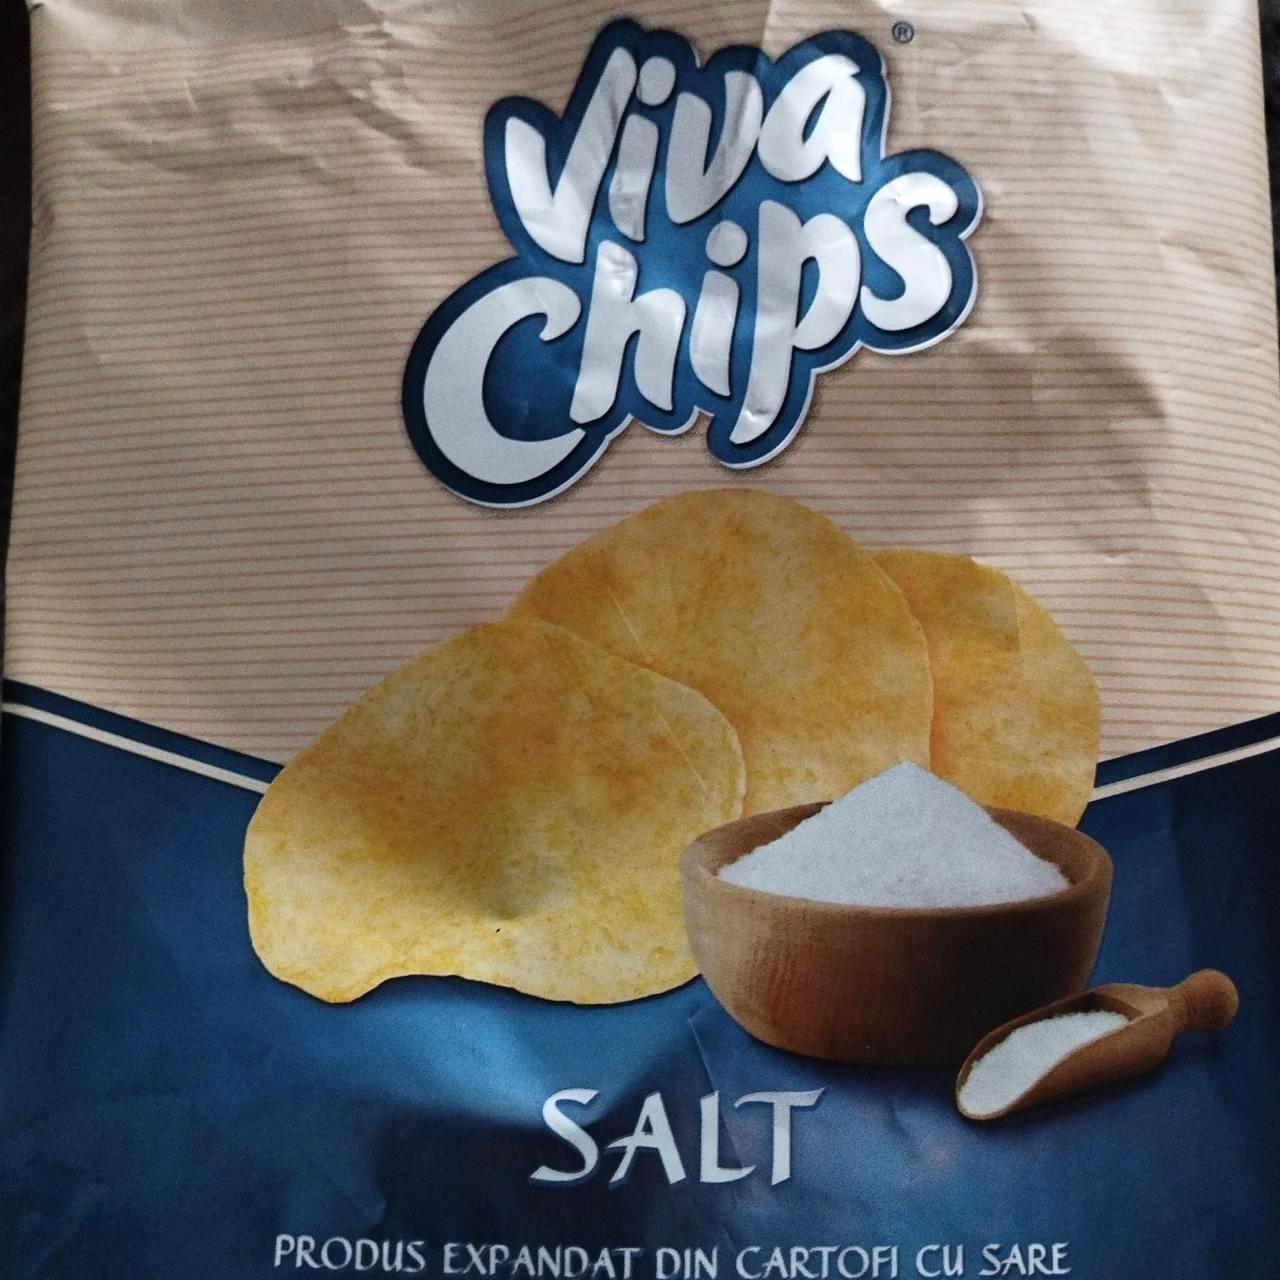 Képek - Viva sós chips